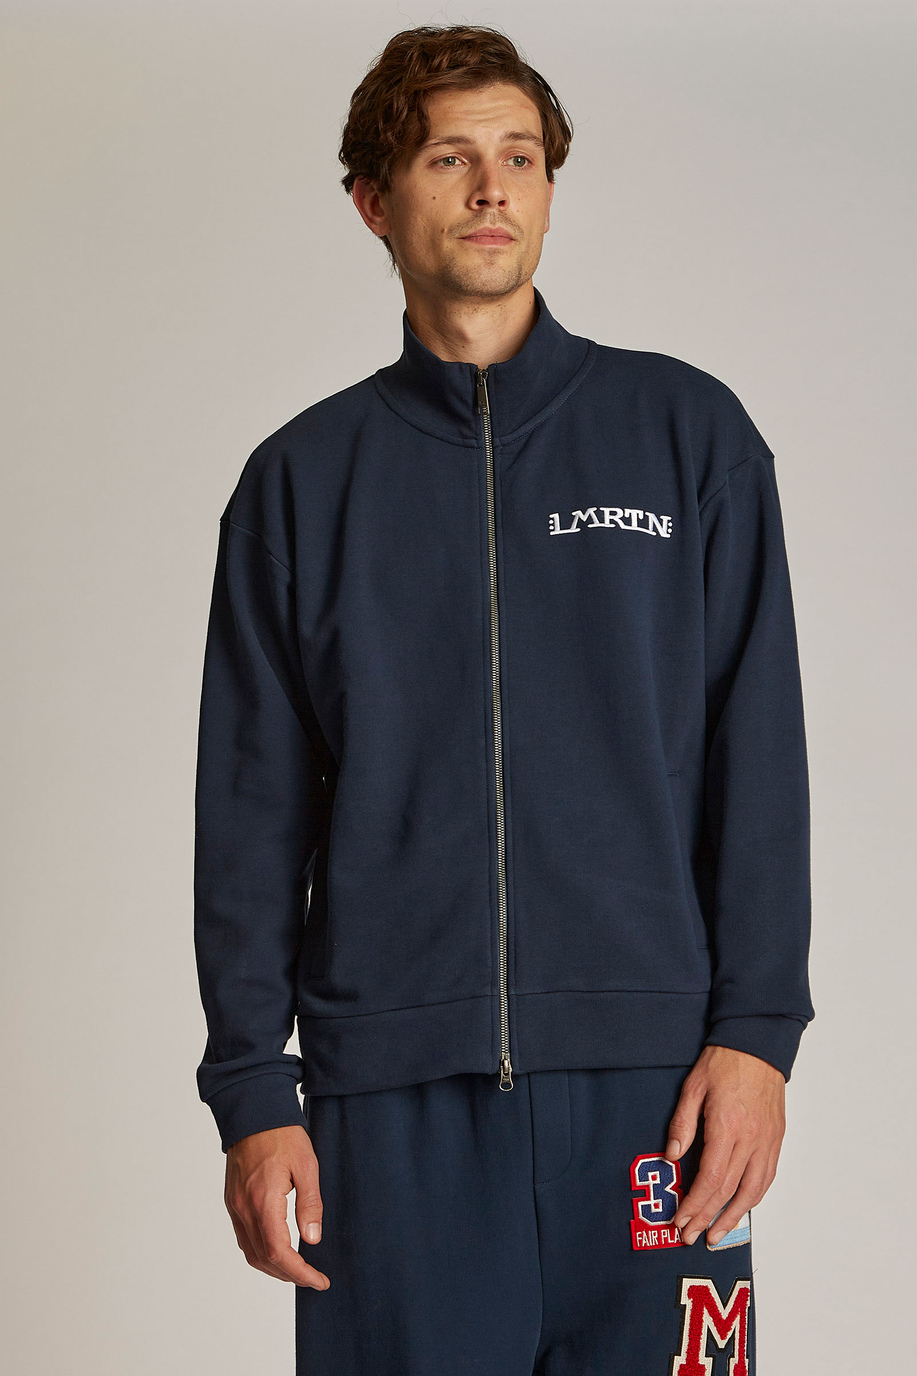 Men's oversized zip-up sweatshirt in 100% cotton fabric - Knitwear & Sweatshirts | La Martina - Official Online Shop